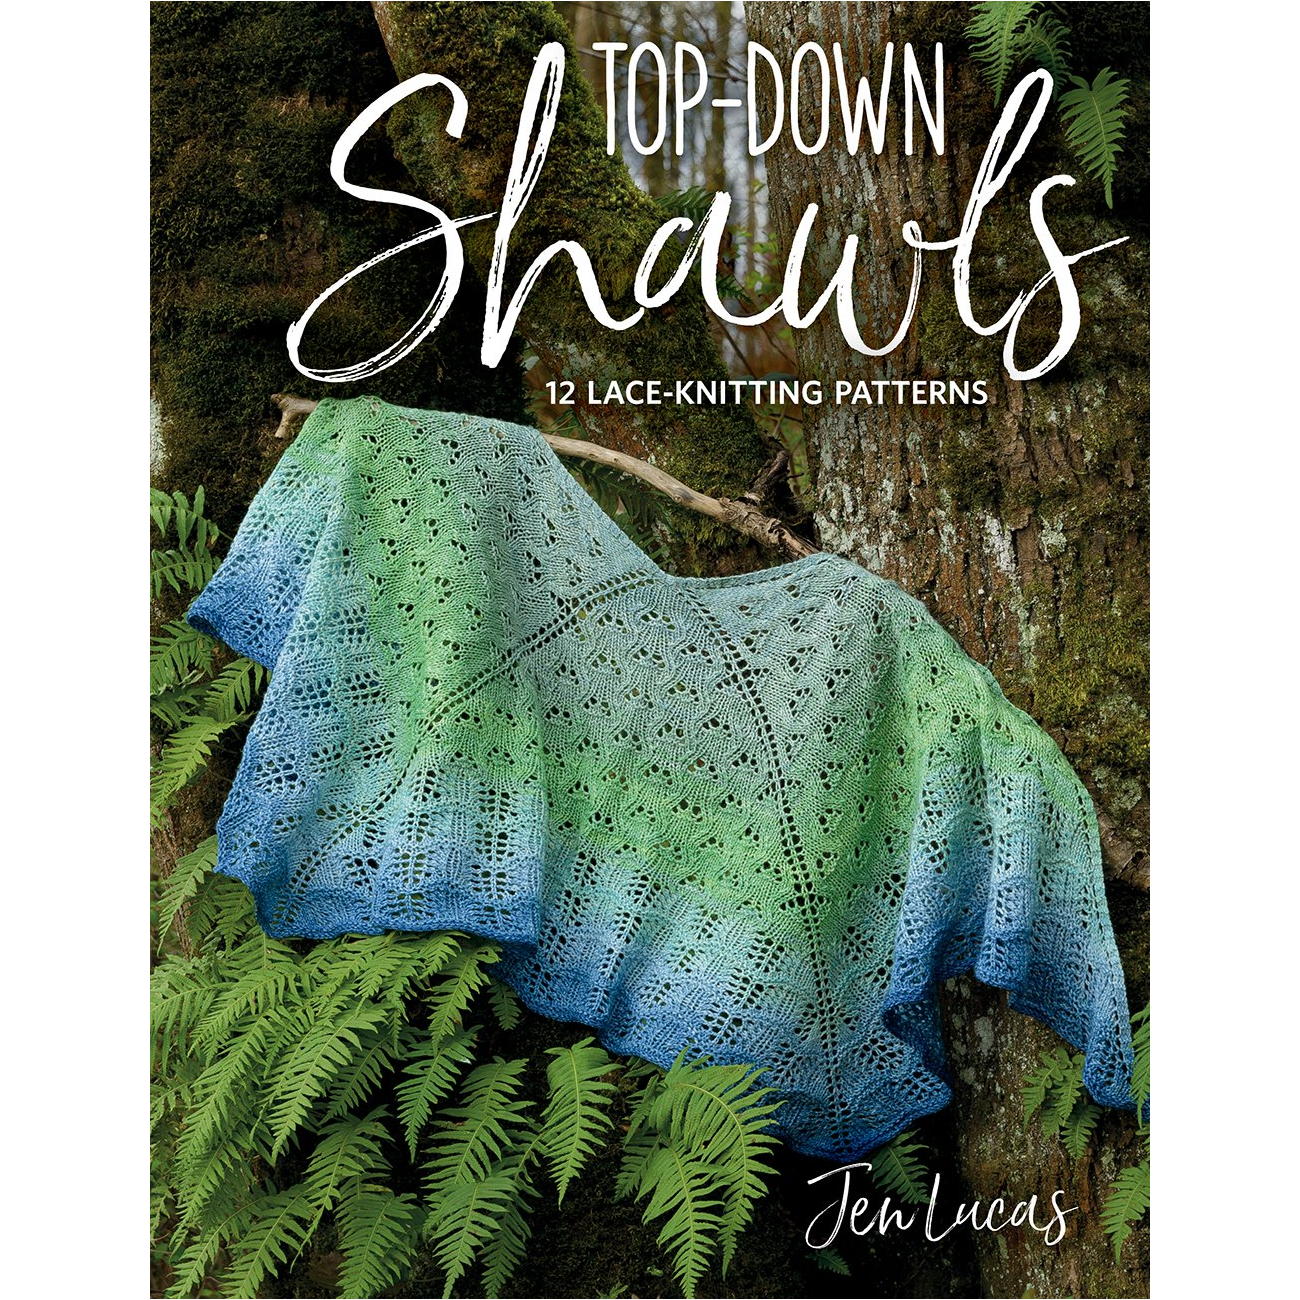 Top Down Shawls by Jen Lucas